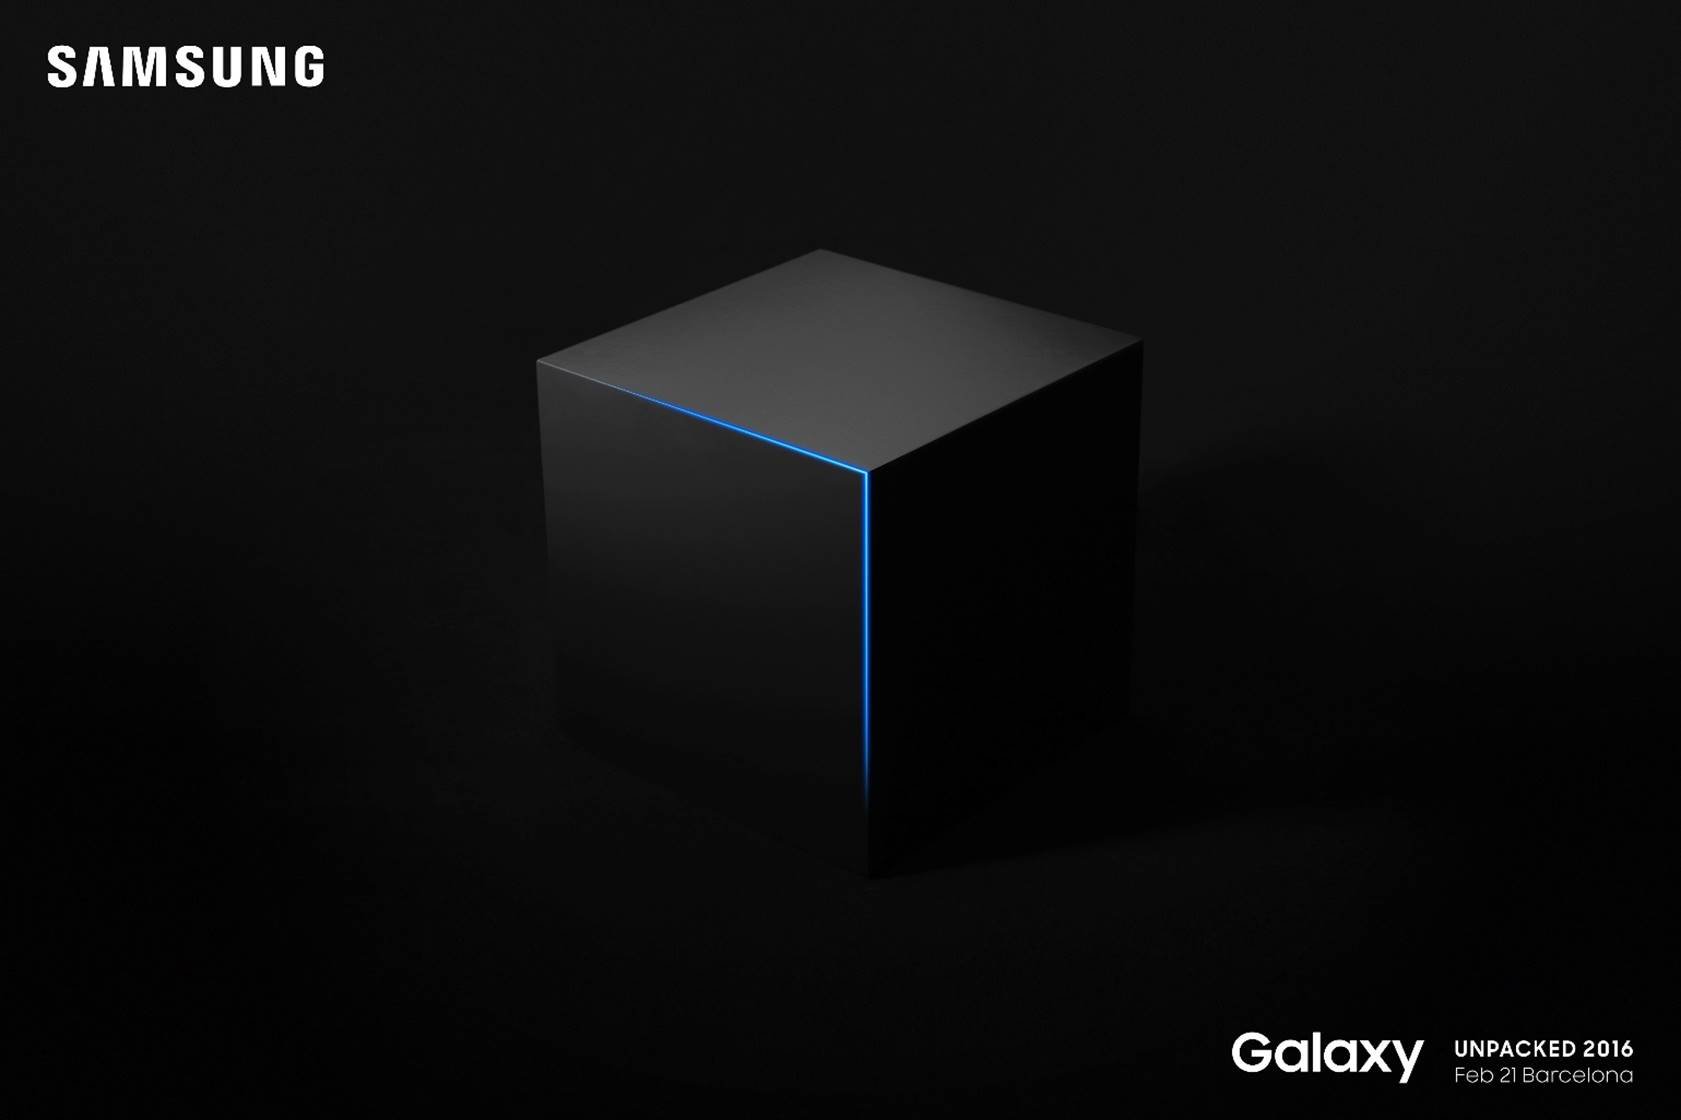 Samsung presentará el Galaxy S7 el 21 de Febrero en Barcelona #MWC2016 #TheNextGalaxy